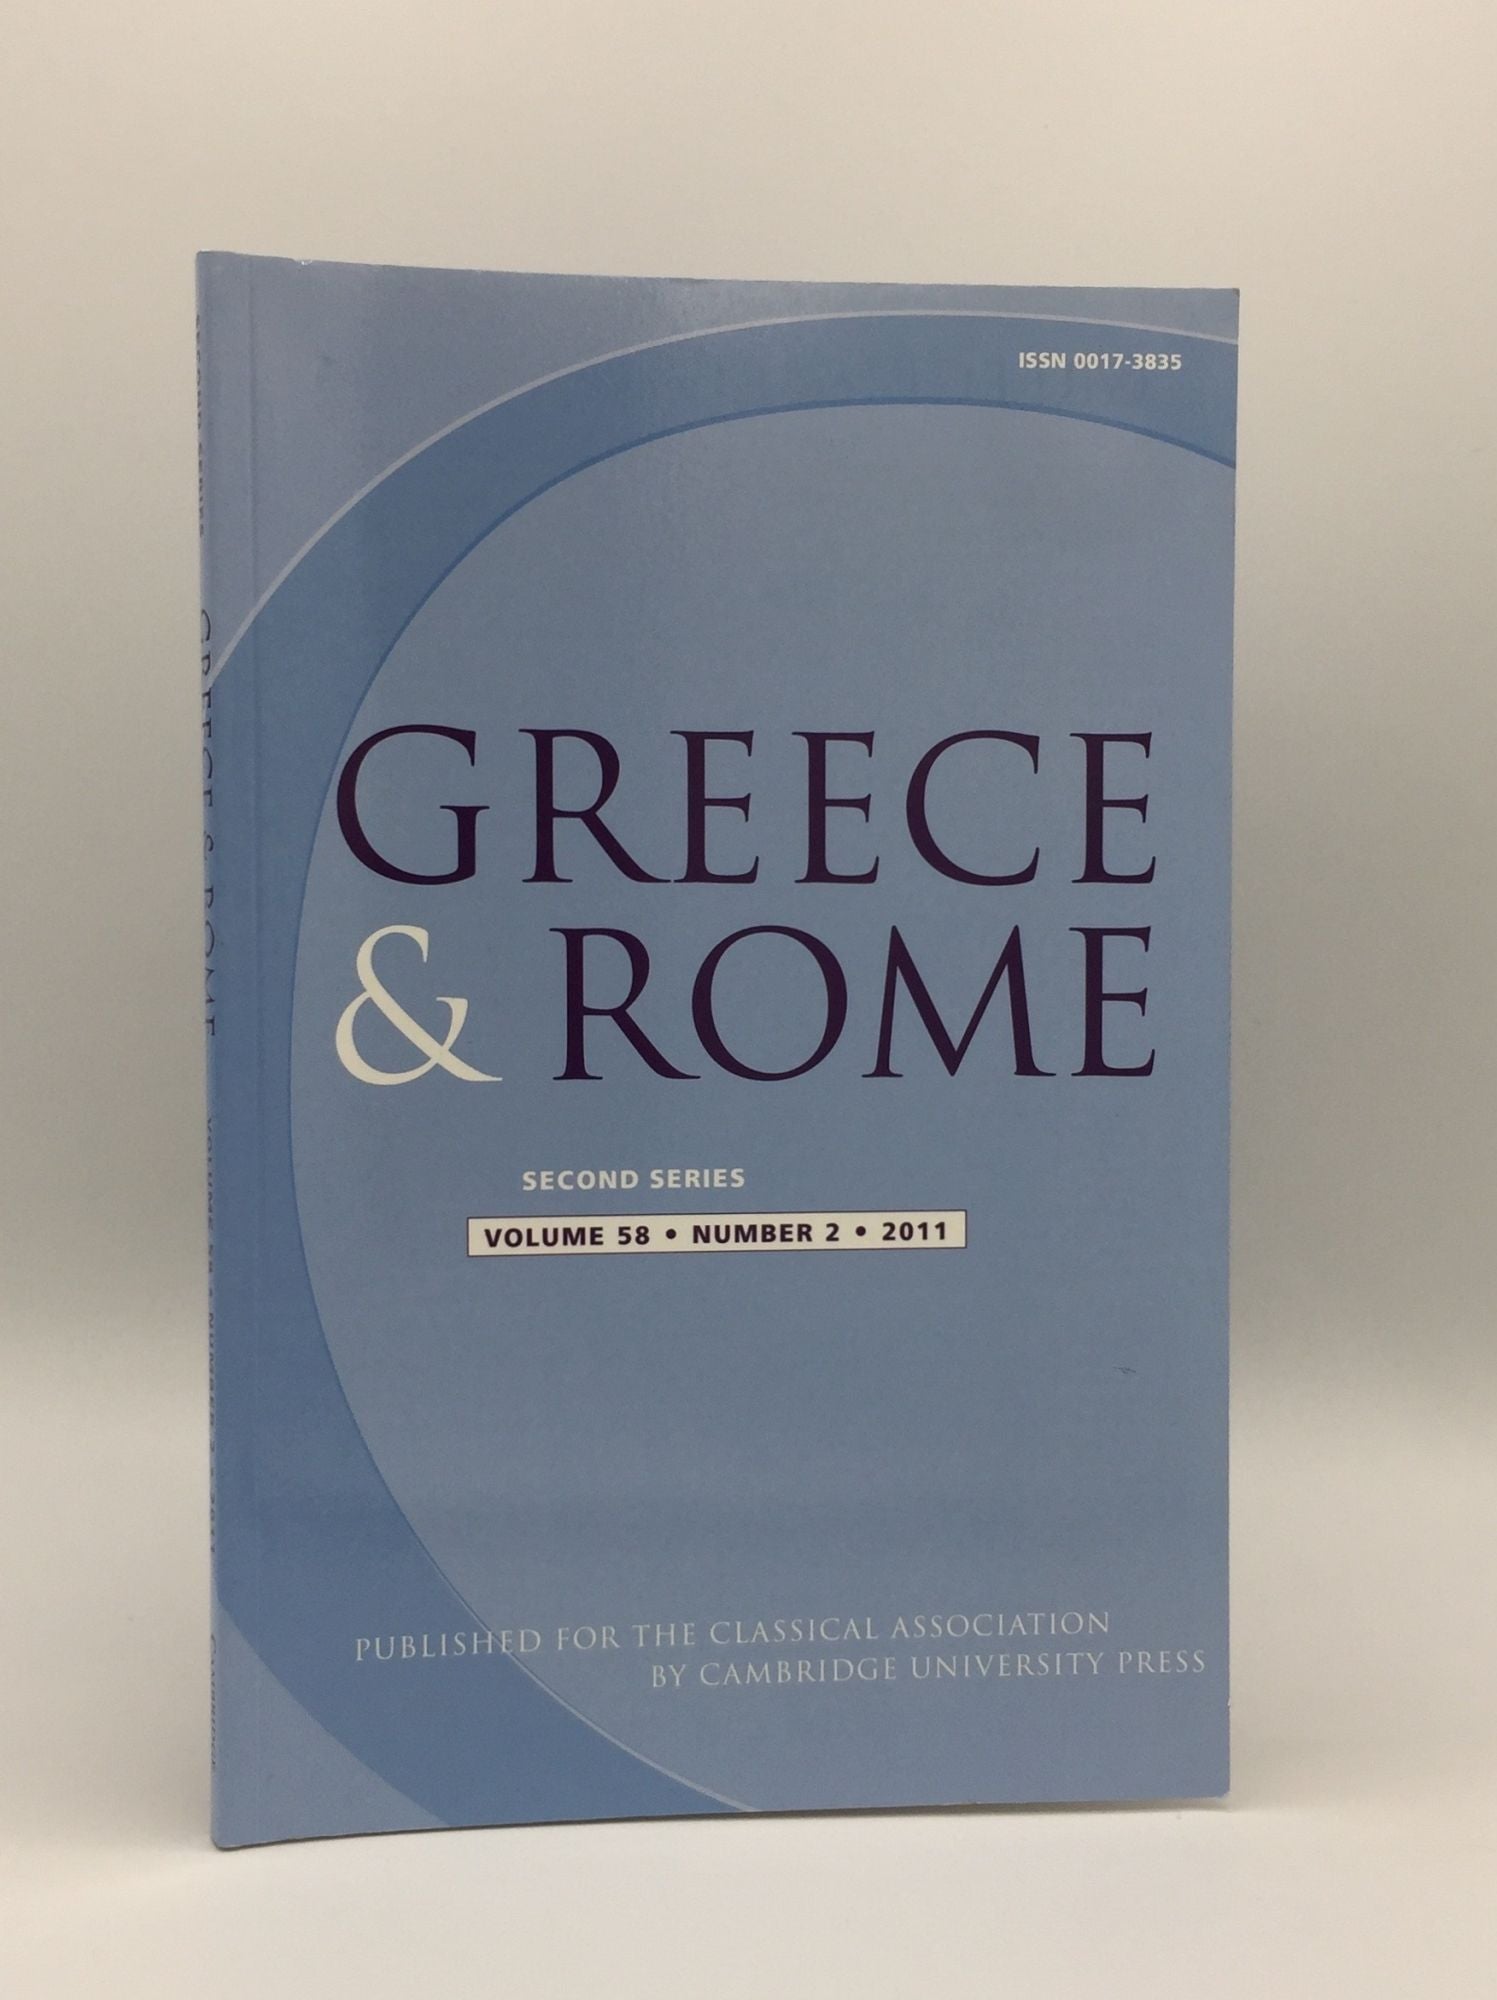 TAYLOR J., IZZET V., SHORROCK R. - Greece & Rome Second Series October 2011 Vol. 58 No. 2